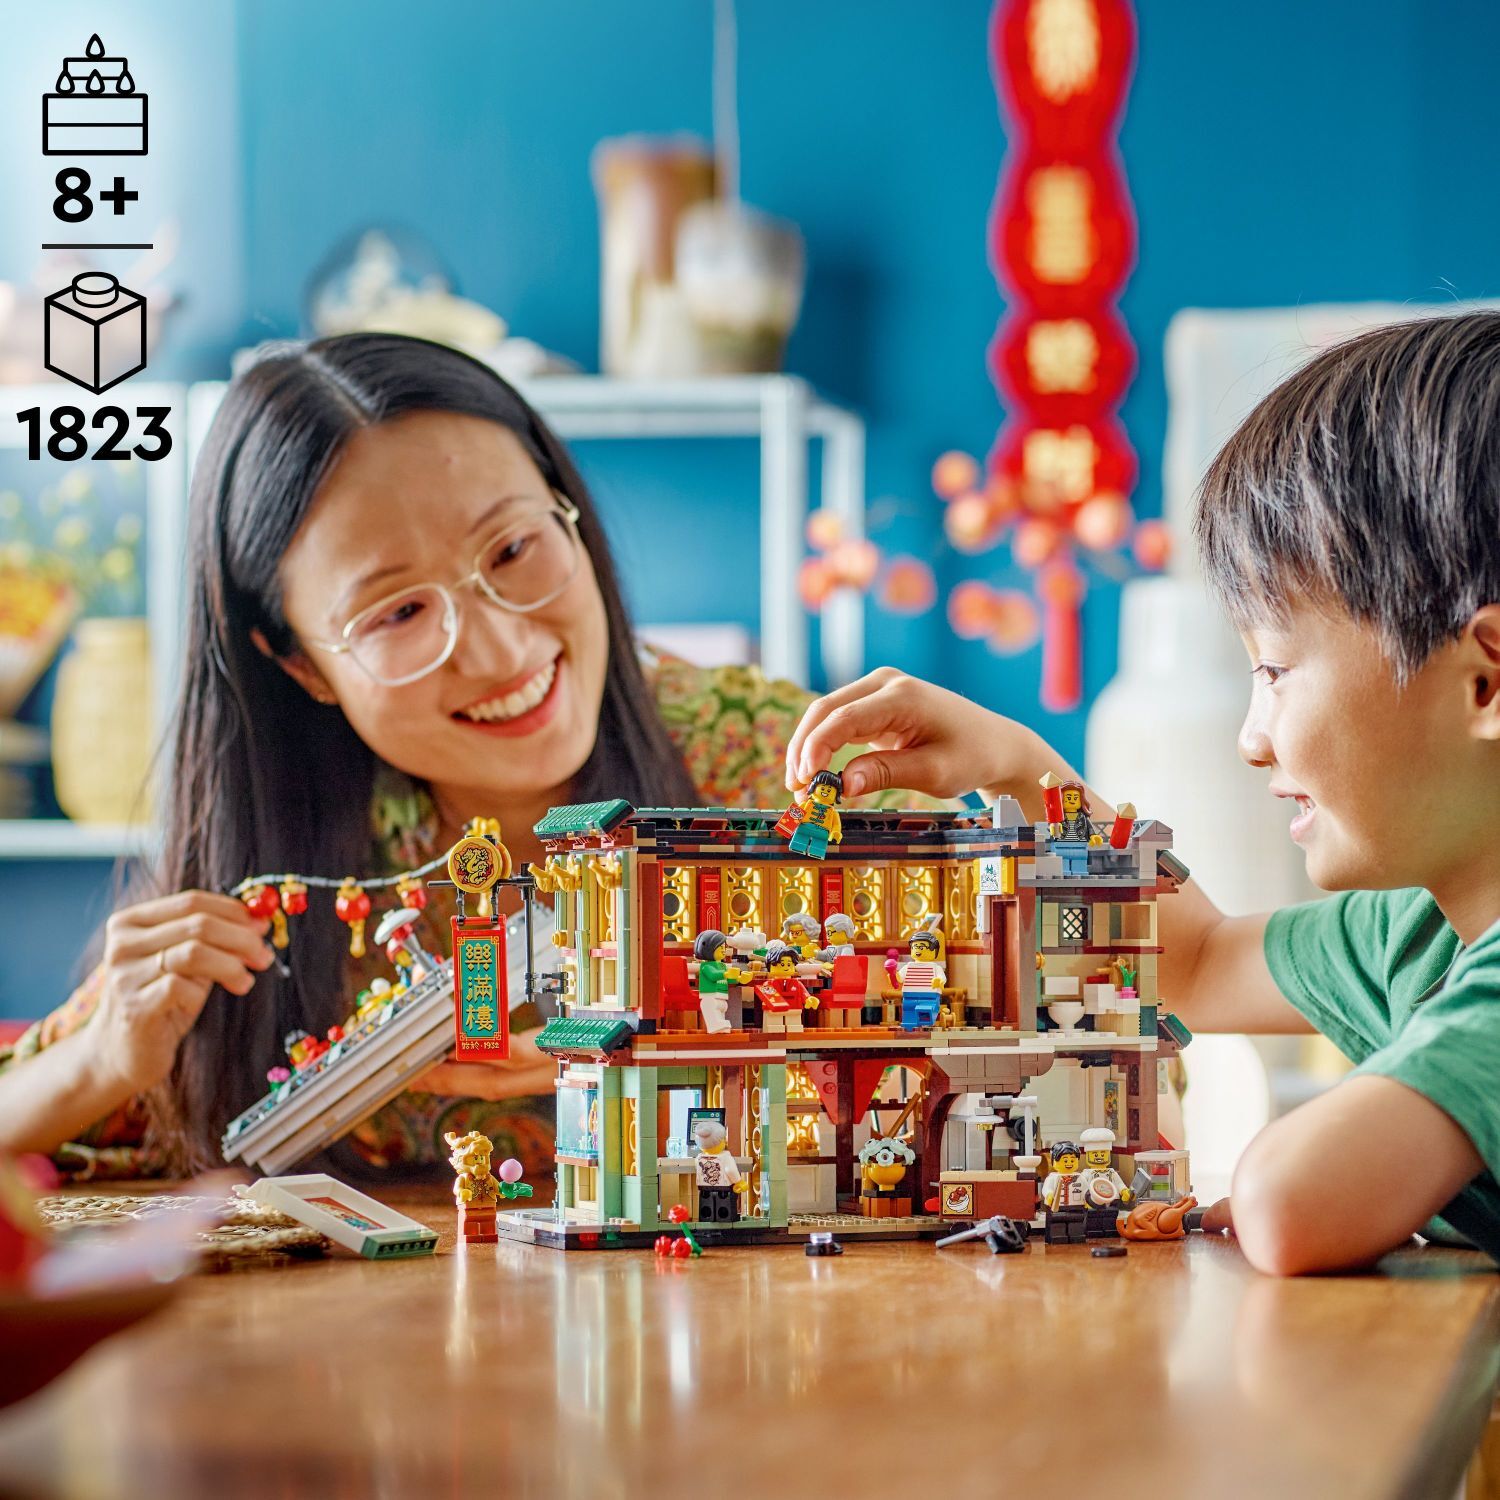 LEGO Chinese Festivals: Family Reunion Celebration